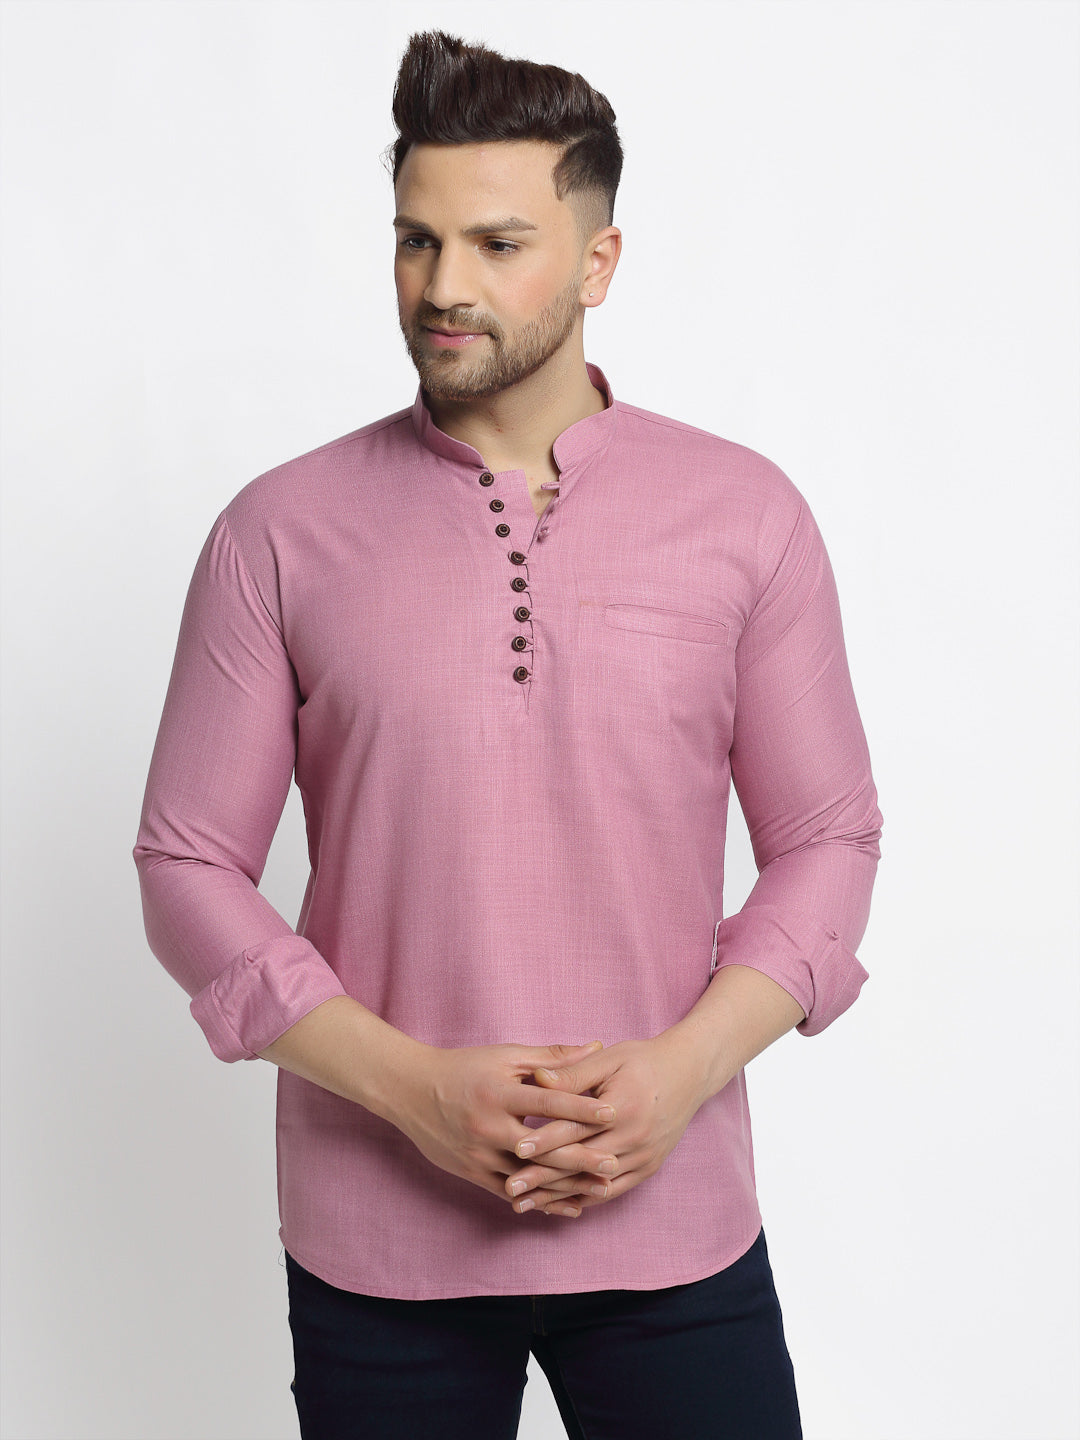 Jompers Men's Magenta Pink Solid Cotton Short Kurta